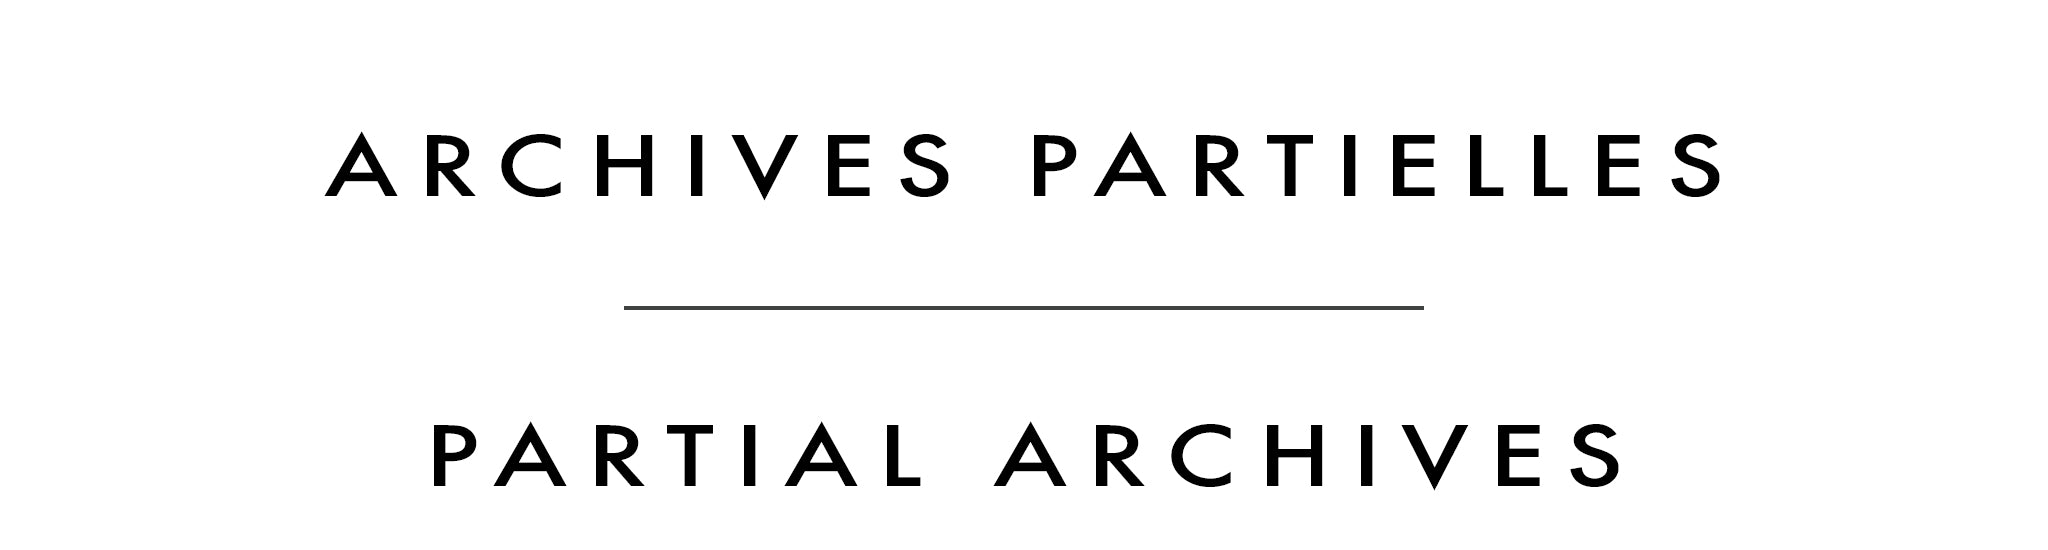 Archives partielles | Partial Archives | Robert Roy